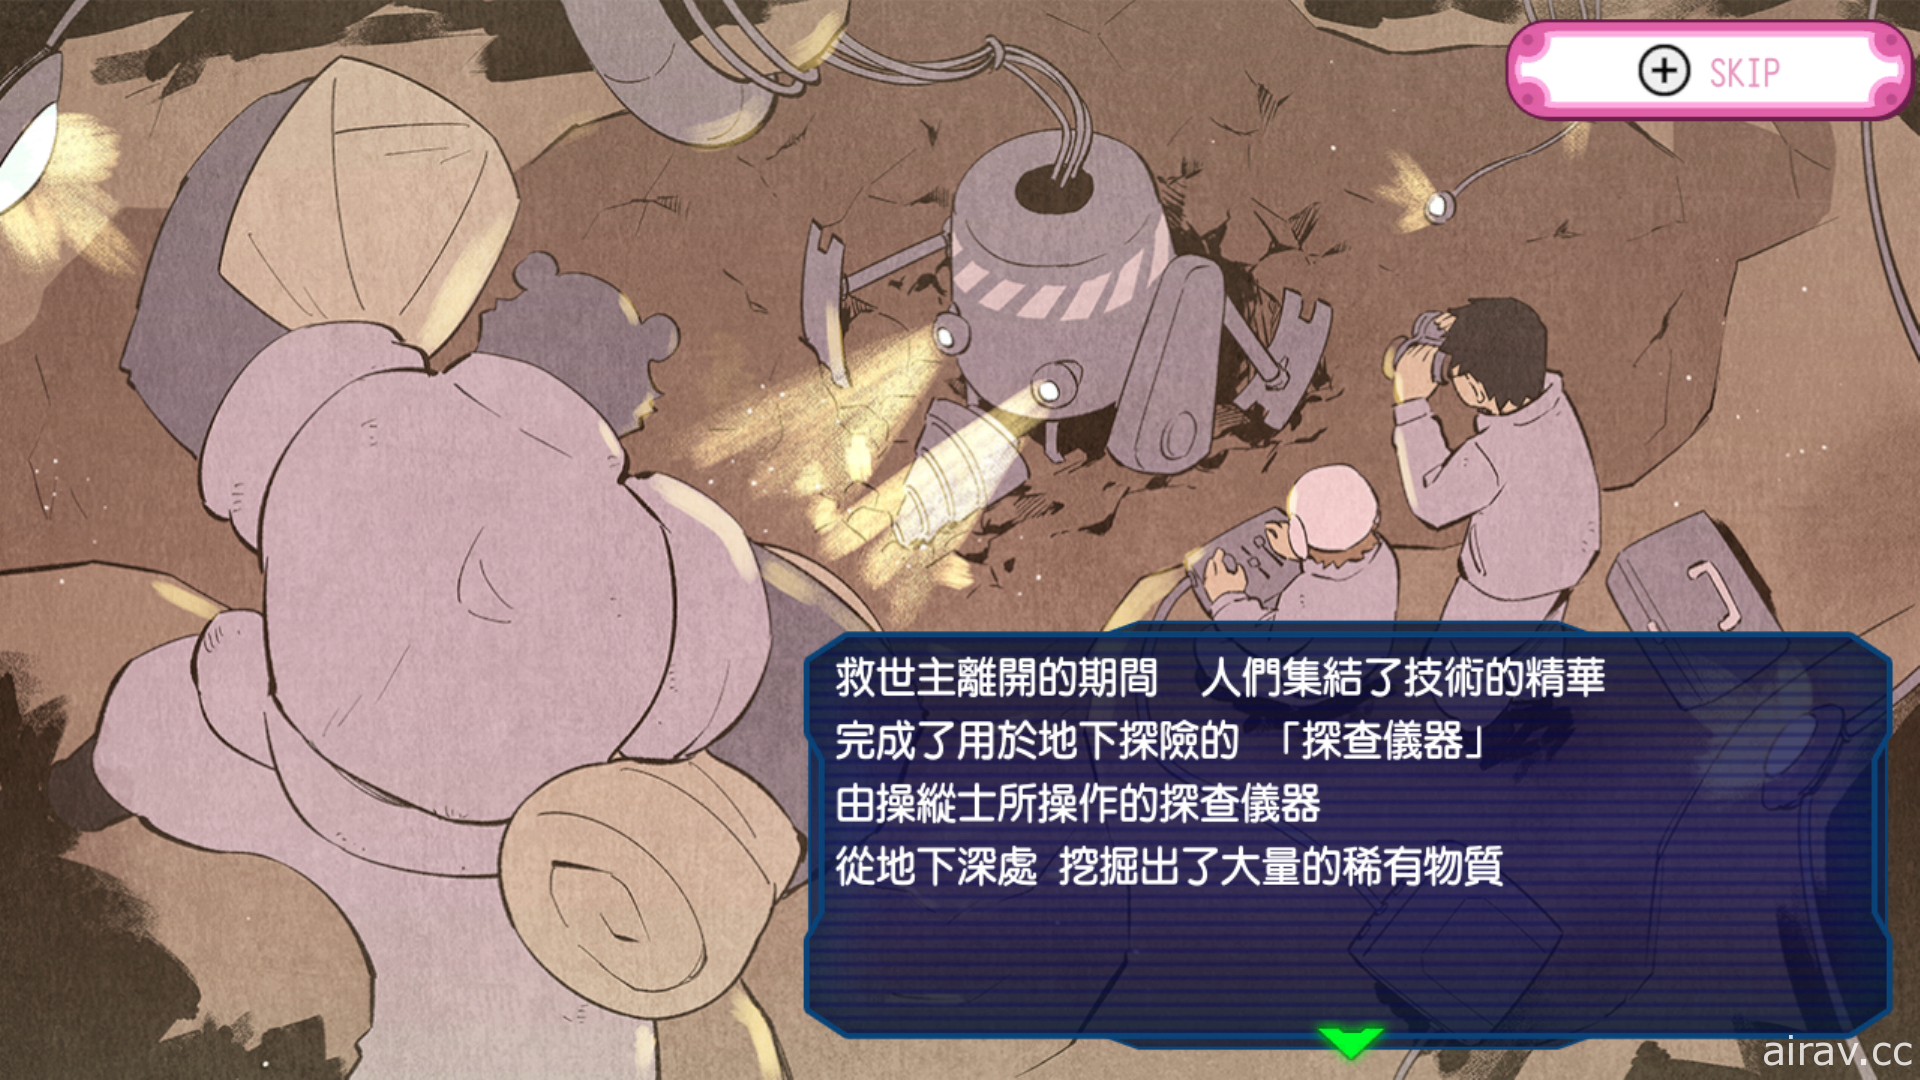 新感覺 Rougelike 挖掘戰略遊戲《地下潛者》中文版 6 月 30 日上市